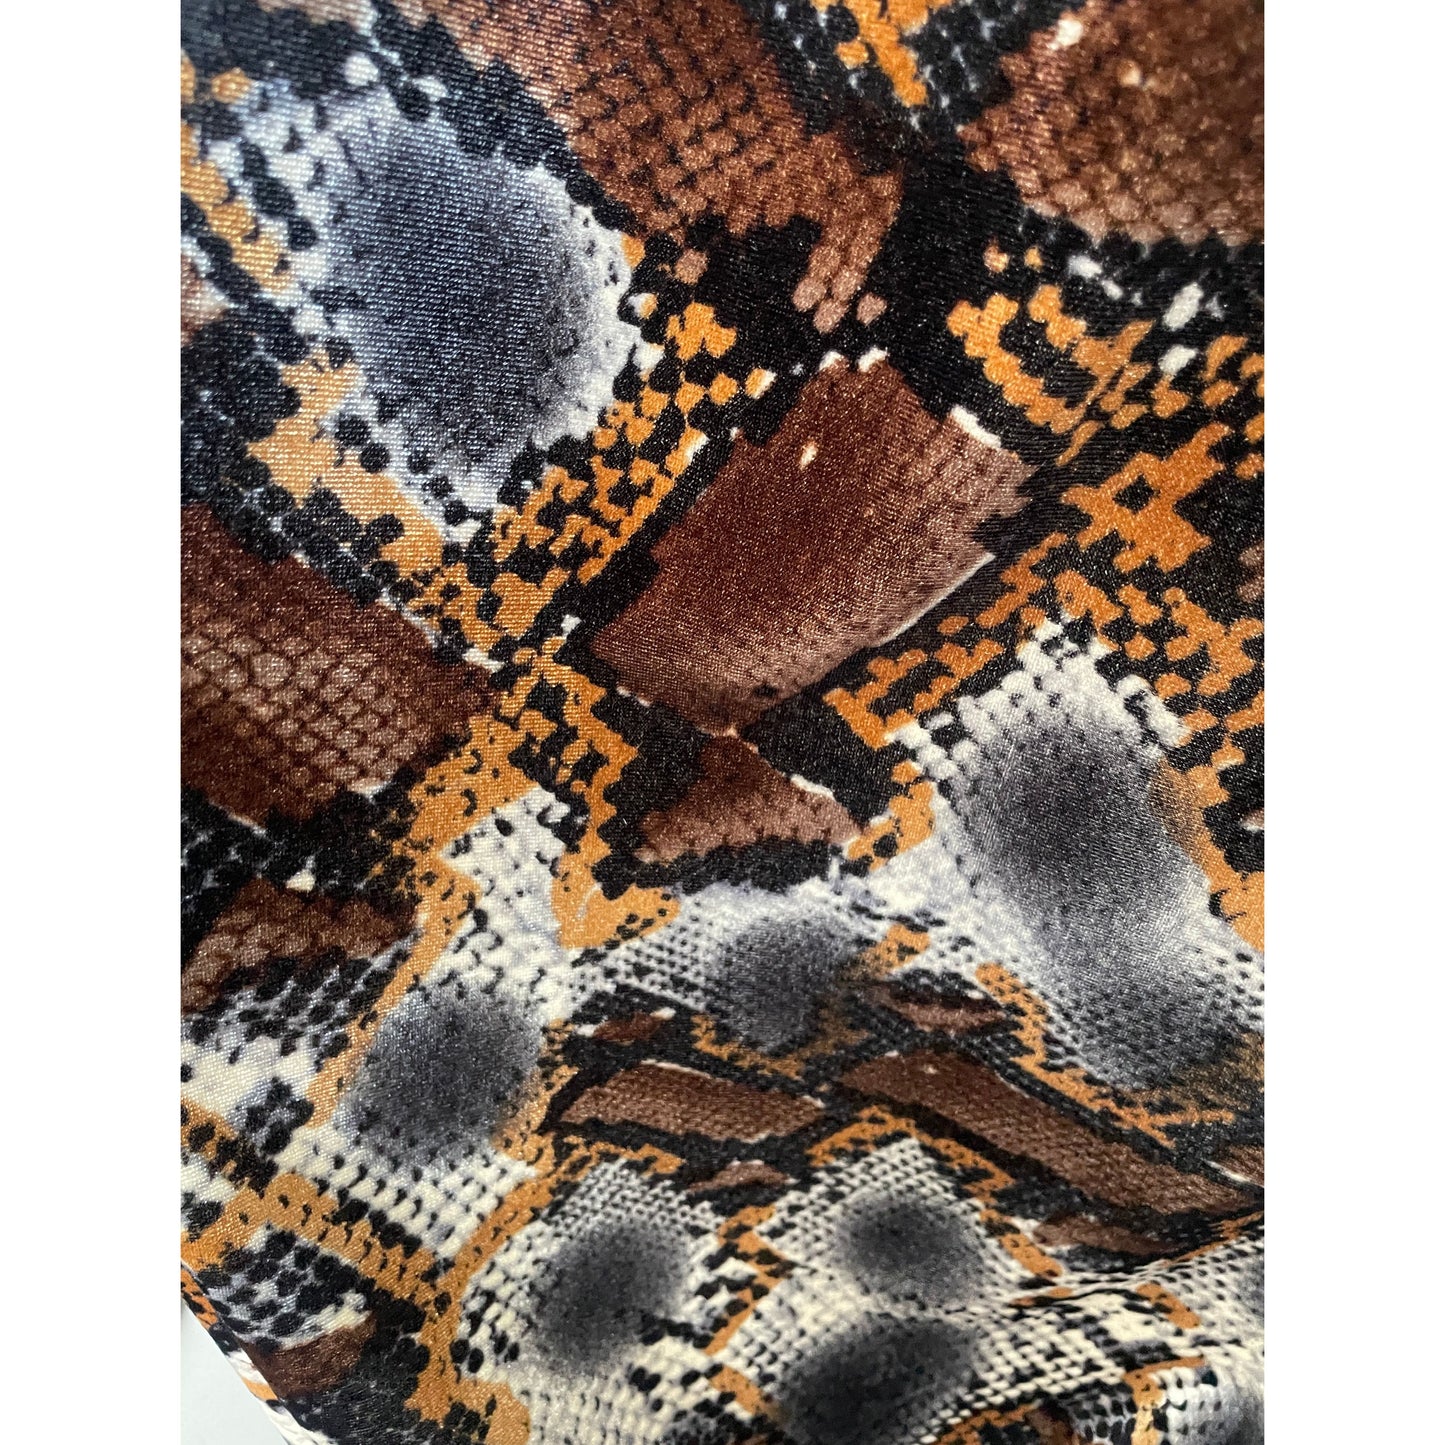 Velvet Snakeskin (fabric)